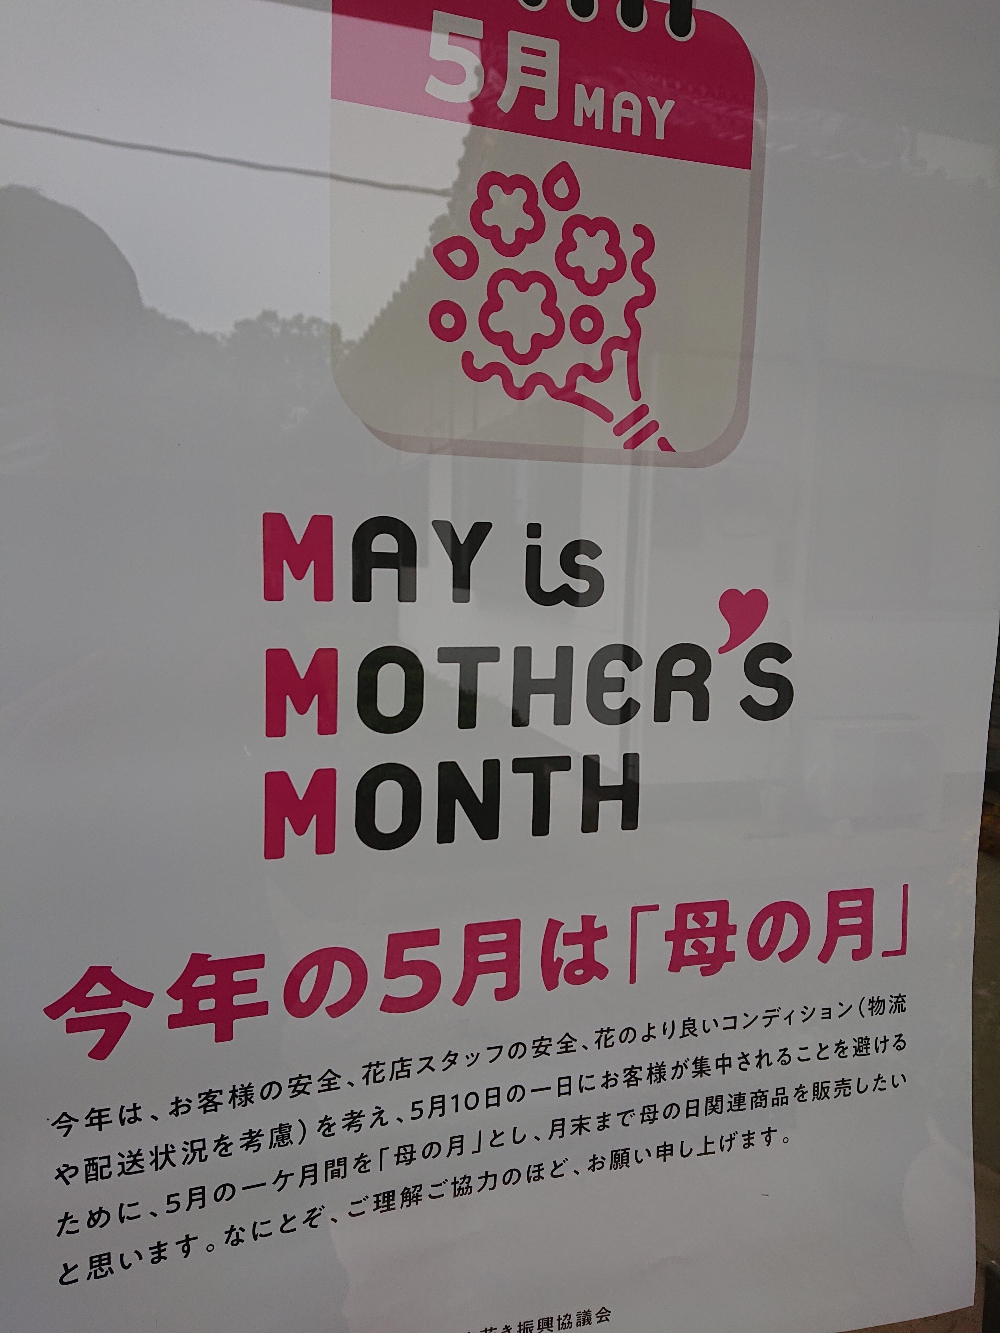 今年の5月は母の月